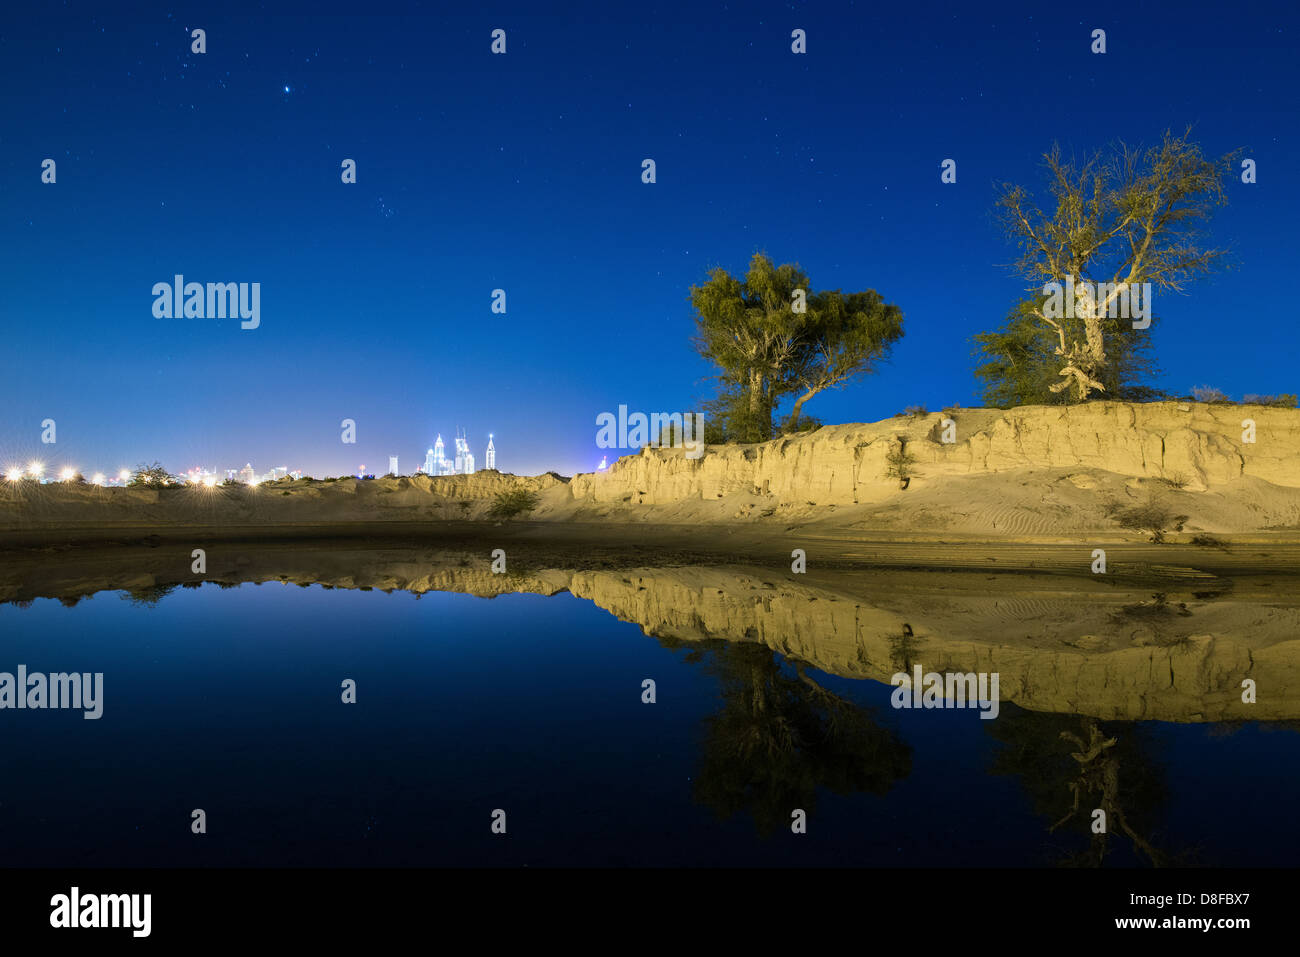 Skyline von New Dubai spiegelt sich in einem Regenwasser-See in der Wüste, Vereinigte Arabische Emirate Stockfoto